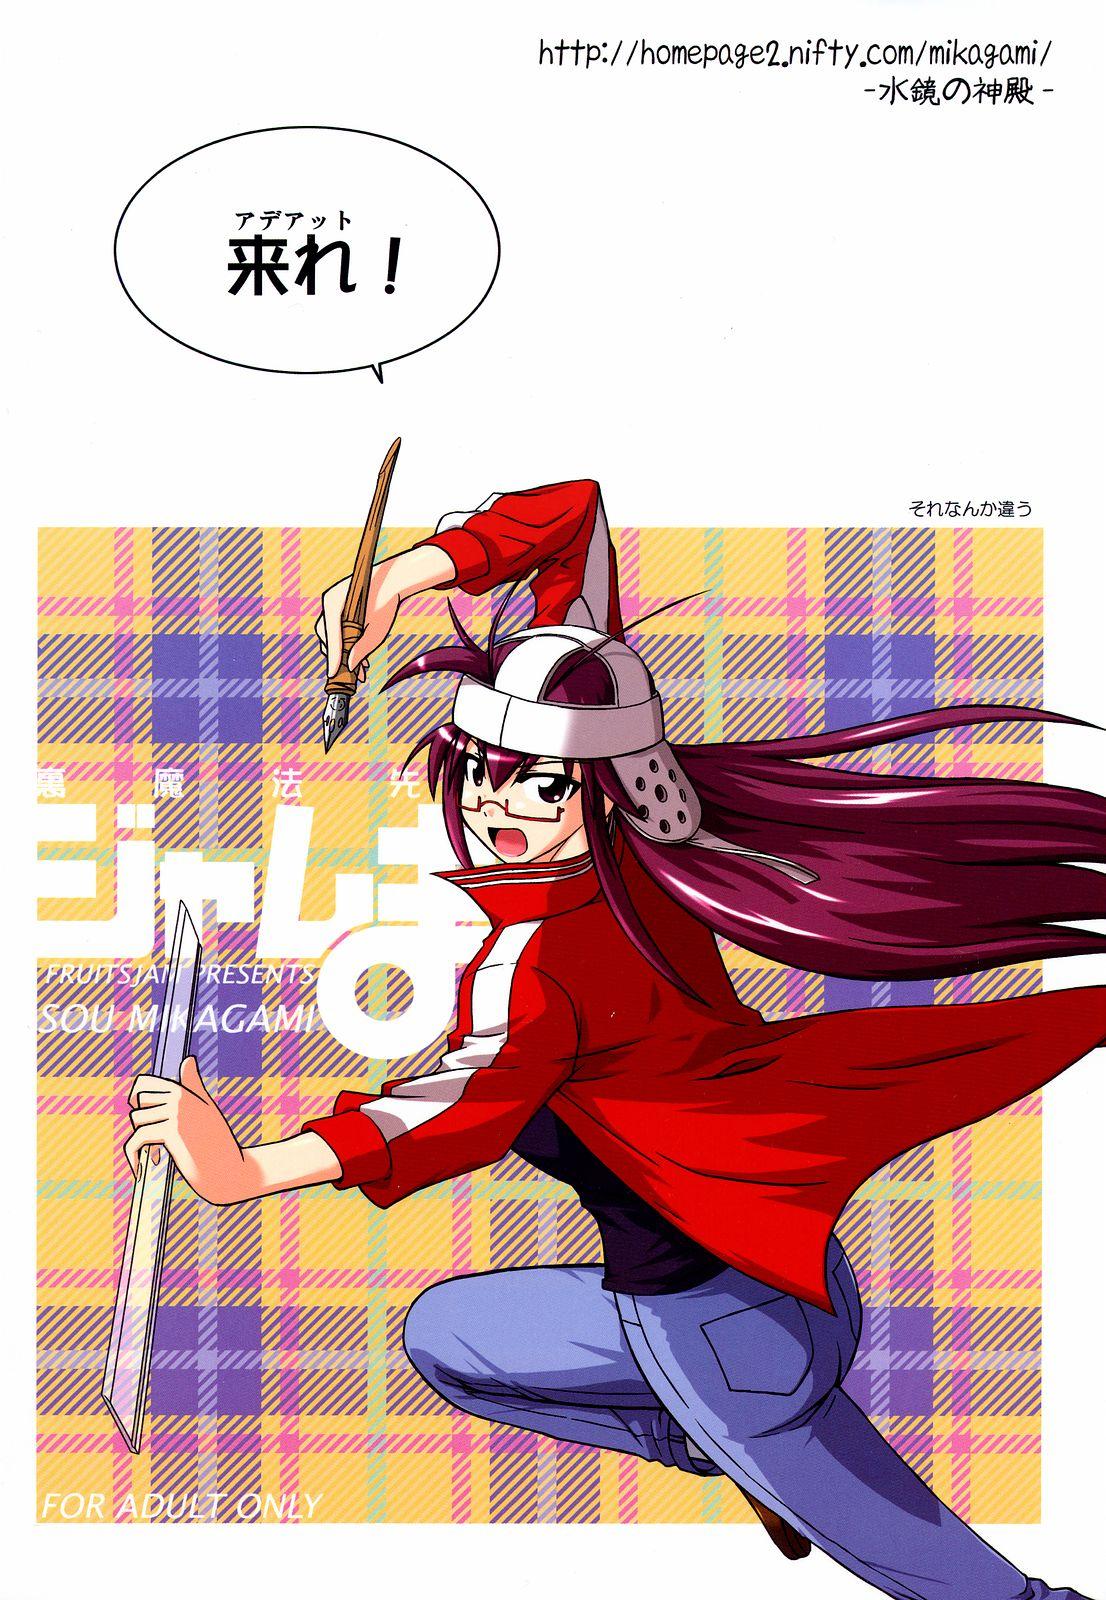 English Ura Mahou Sensei Jamma! 10 - Mahou sensei negima Ftvgirls - Page 27